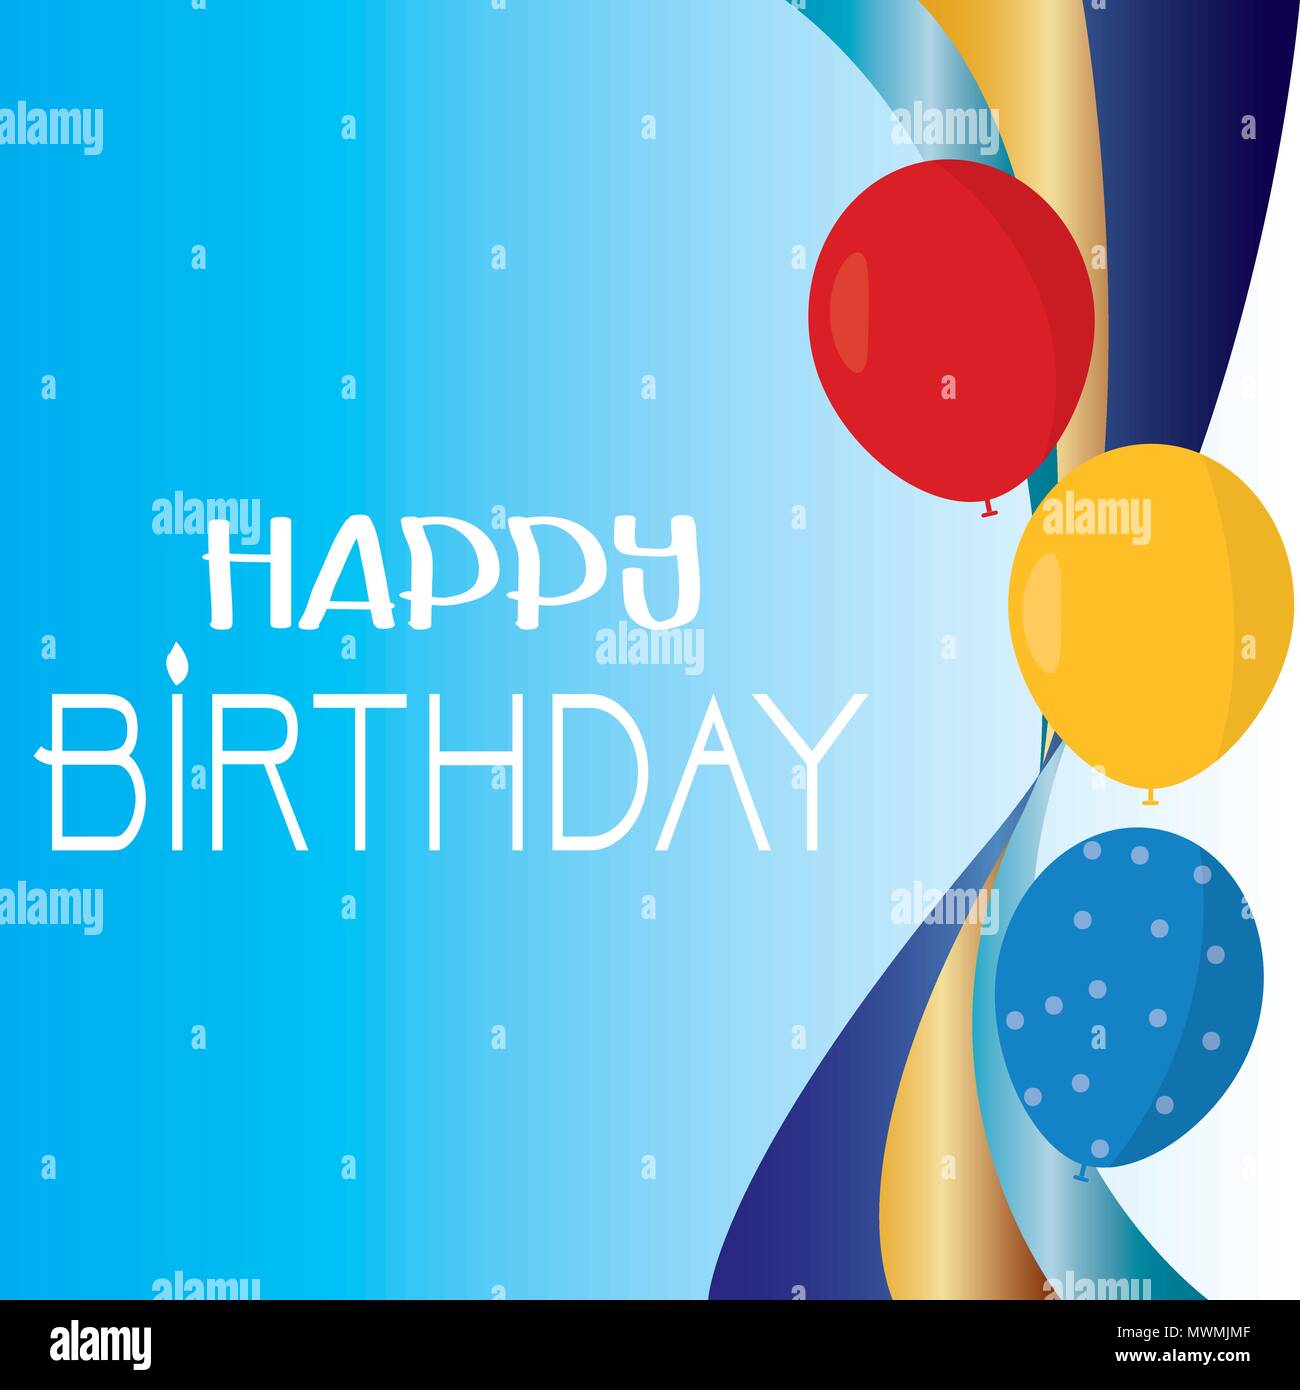 Happy Birthday Background Stock Vector Image & Art - Alamy